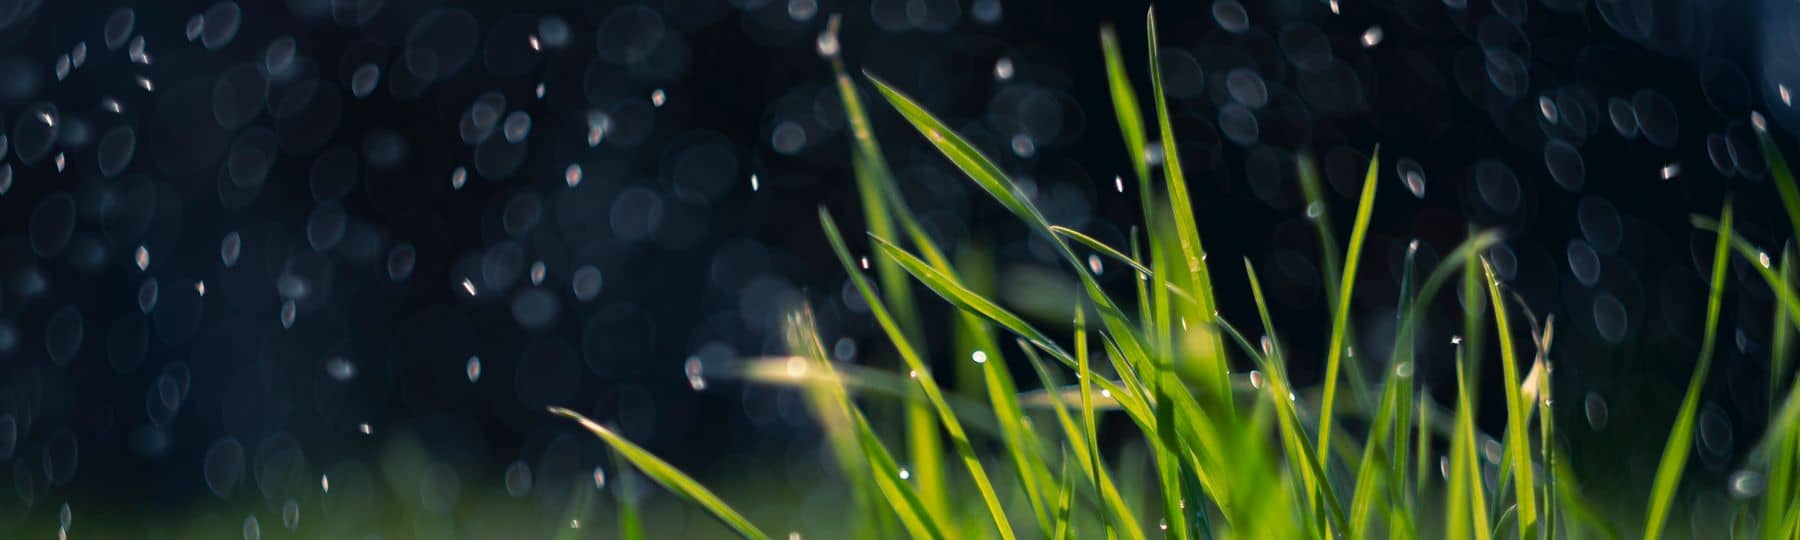 De la pluie tombe sur un touffe d'herbe vigoureuse